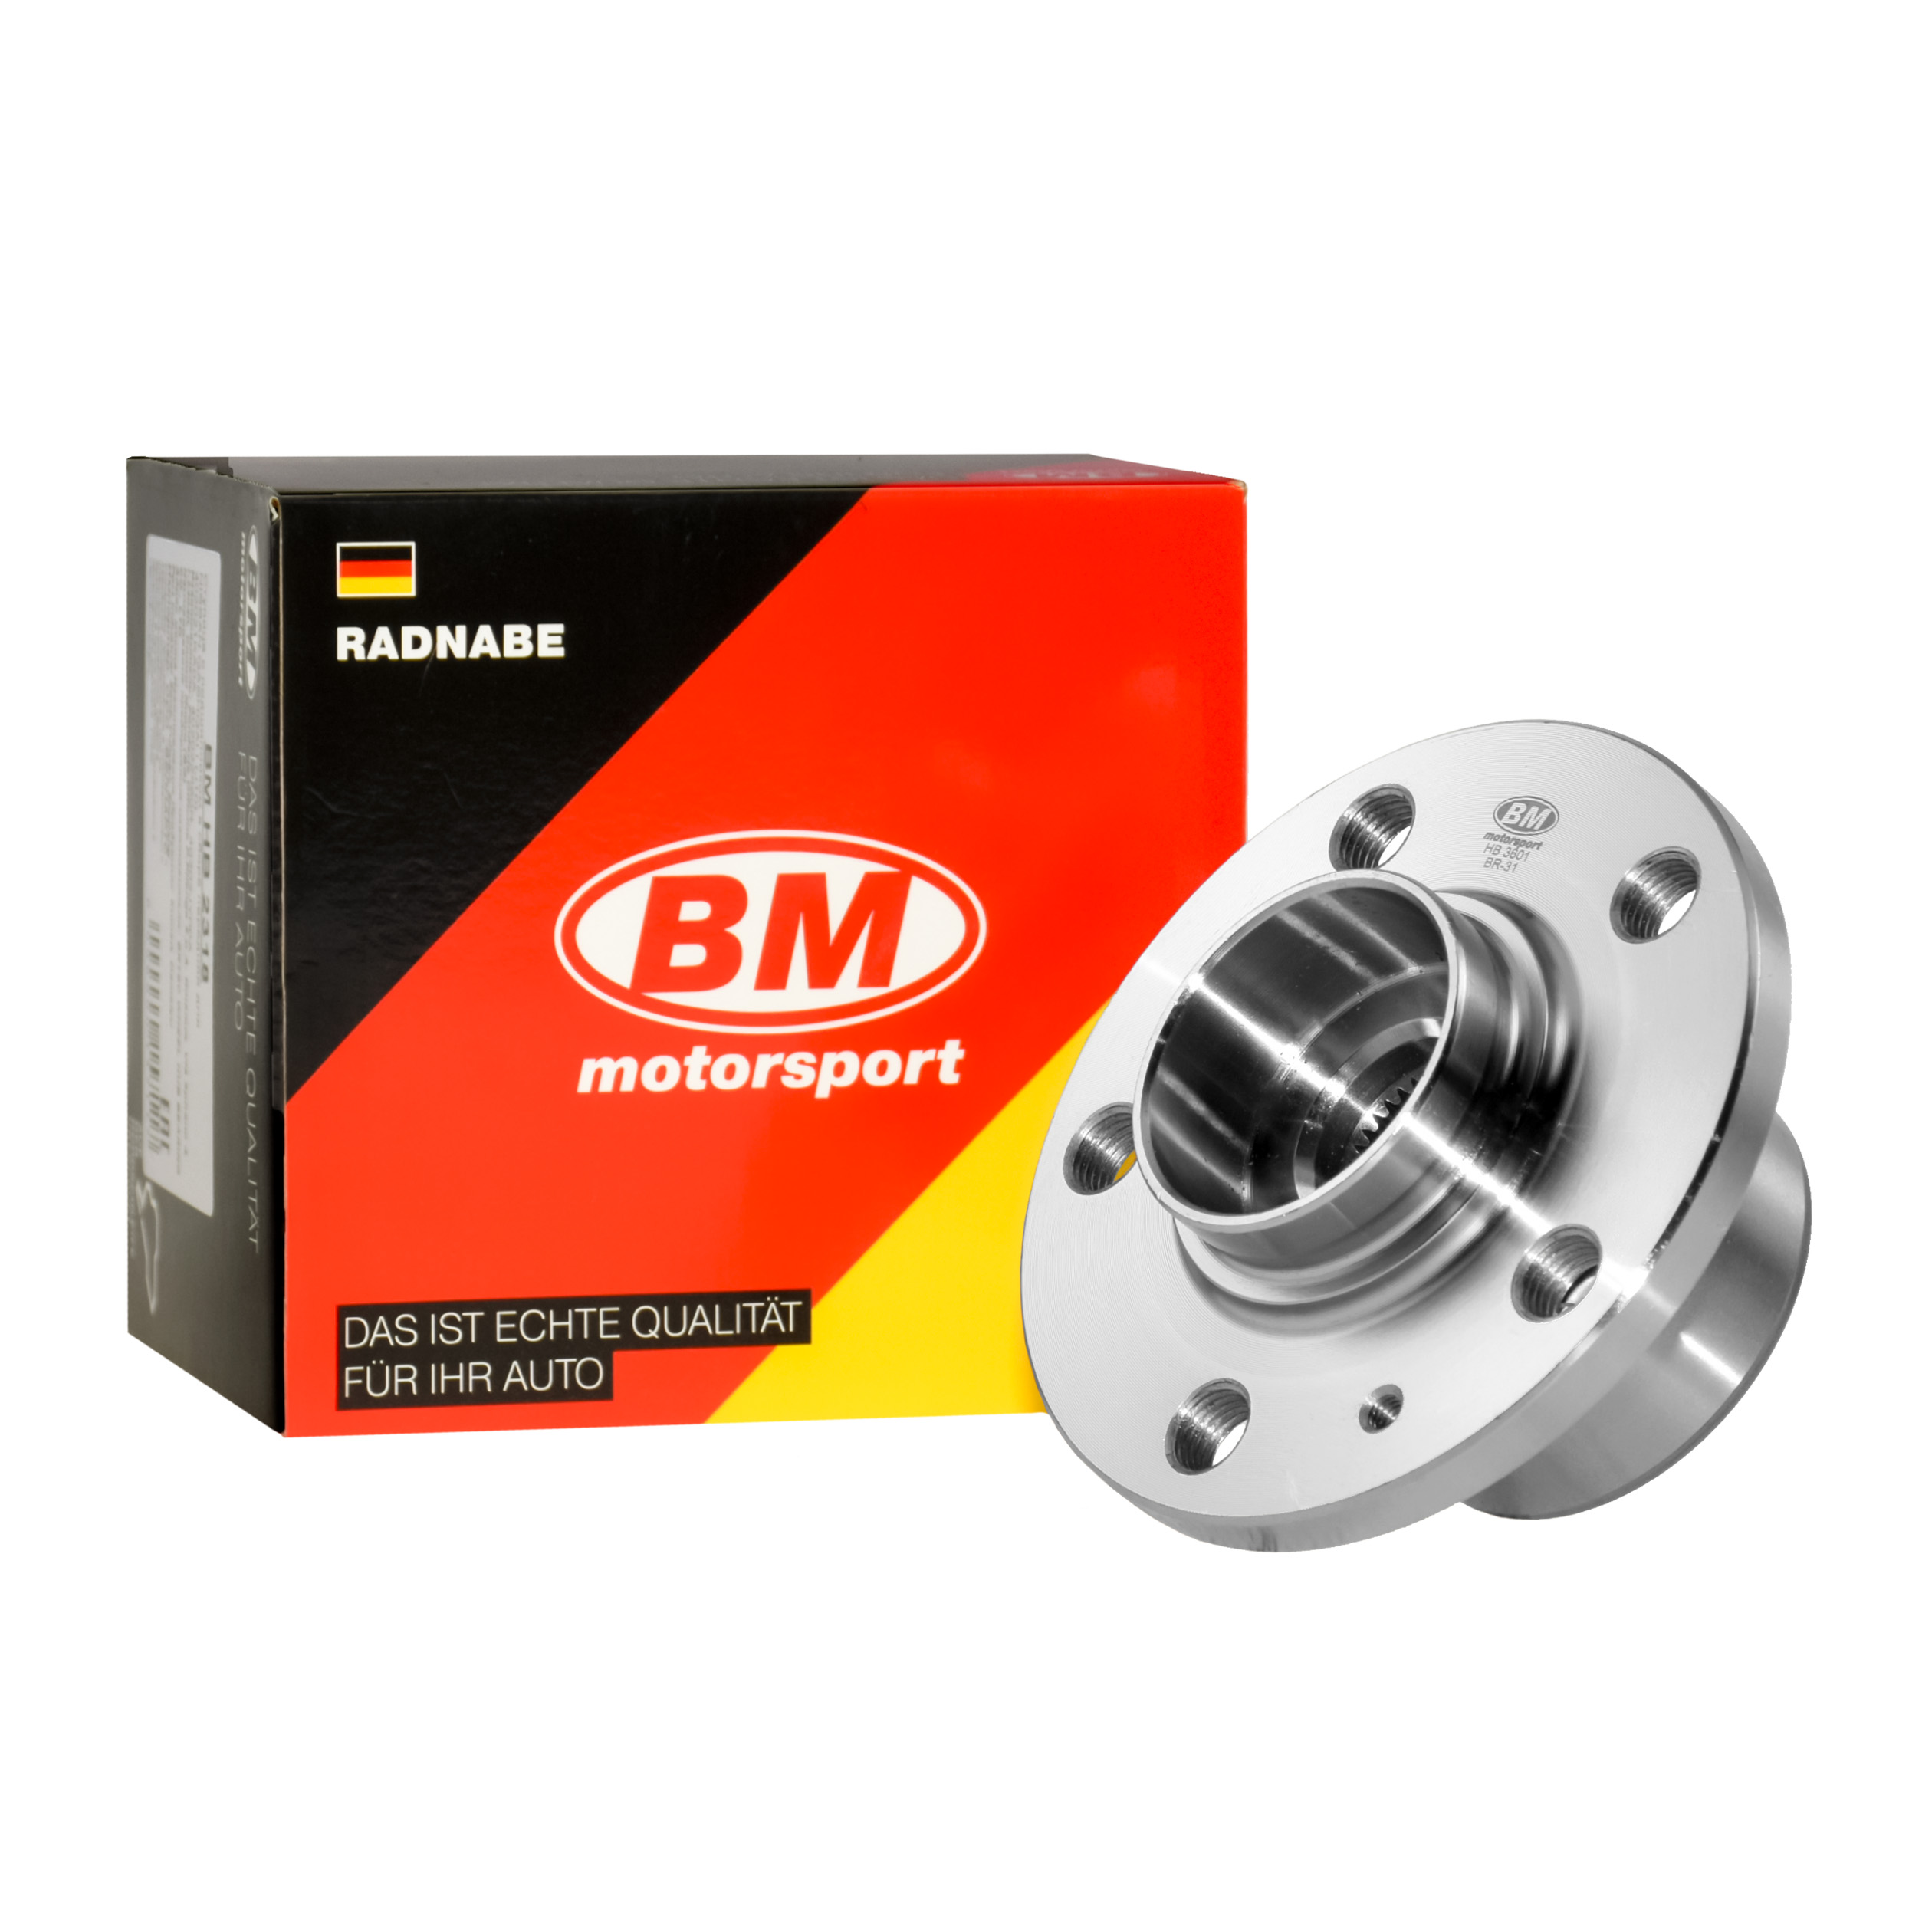 BM HB 3601 Ступица передняя, для тормозных дисков D 256mm, 288mm